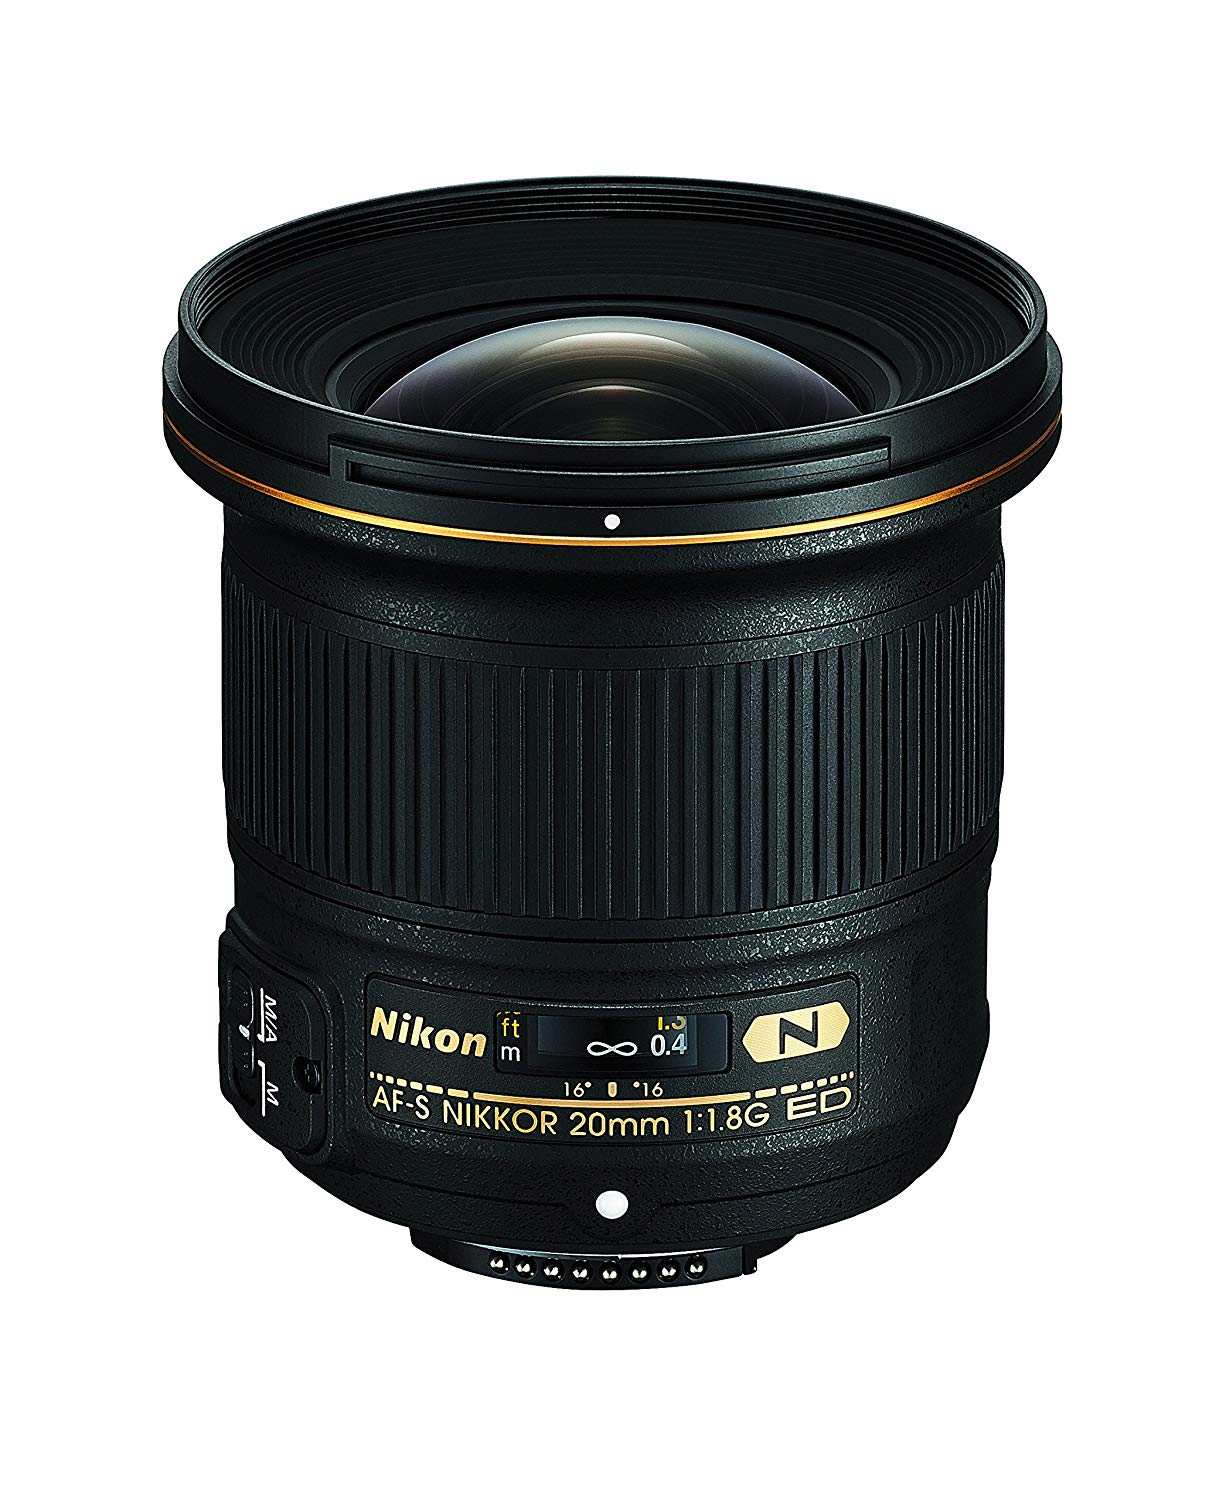 Nikon AFR-S FX NIKKOR 20mm f / 1.8G ED फिक्स्ड लेंस DSLR कैमरा के लिए ऑटो फोकस के साथ